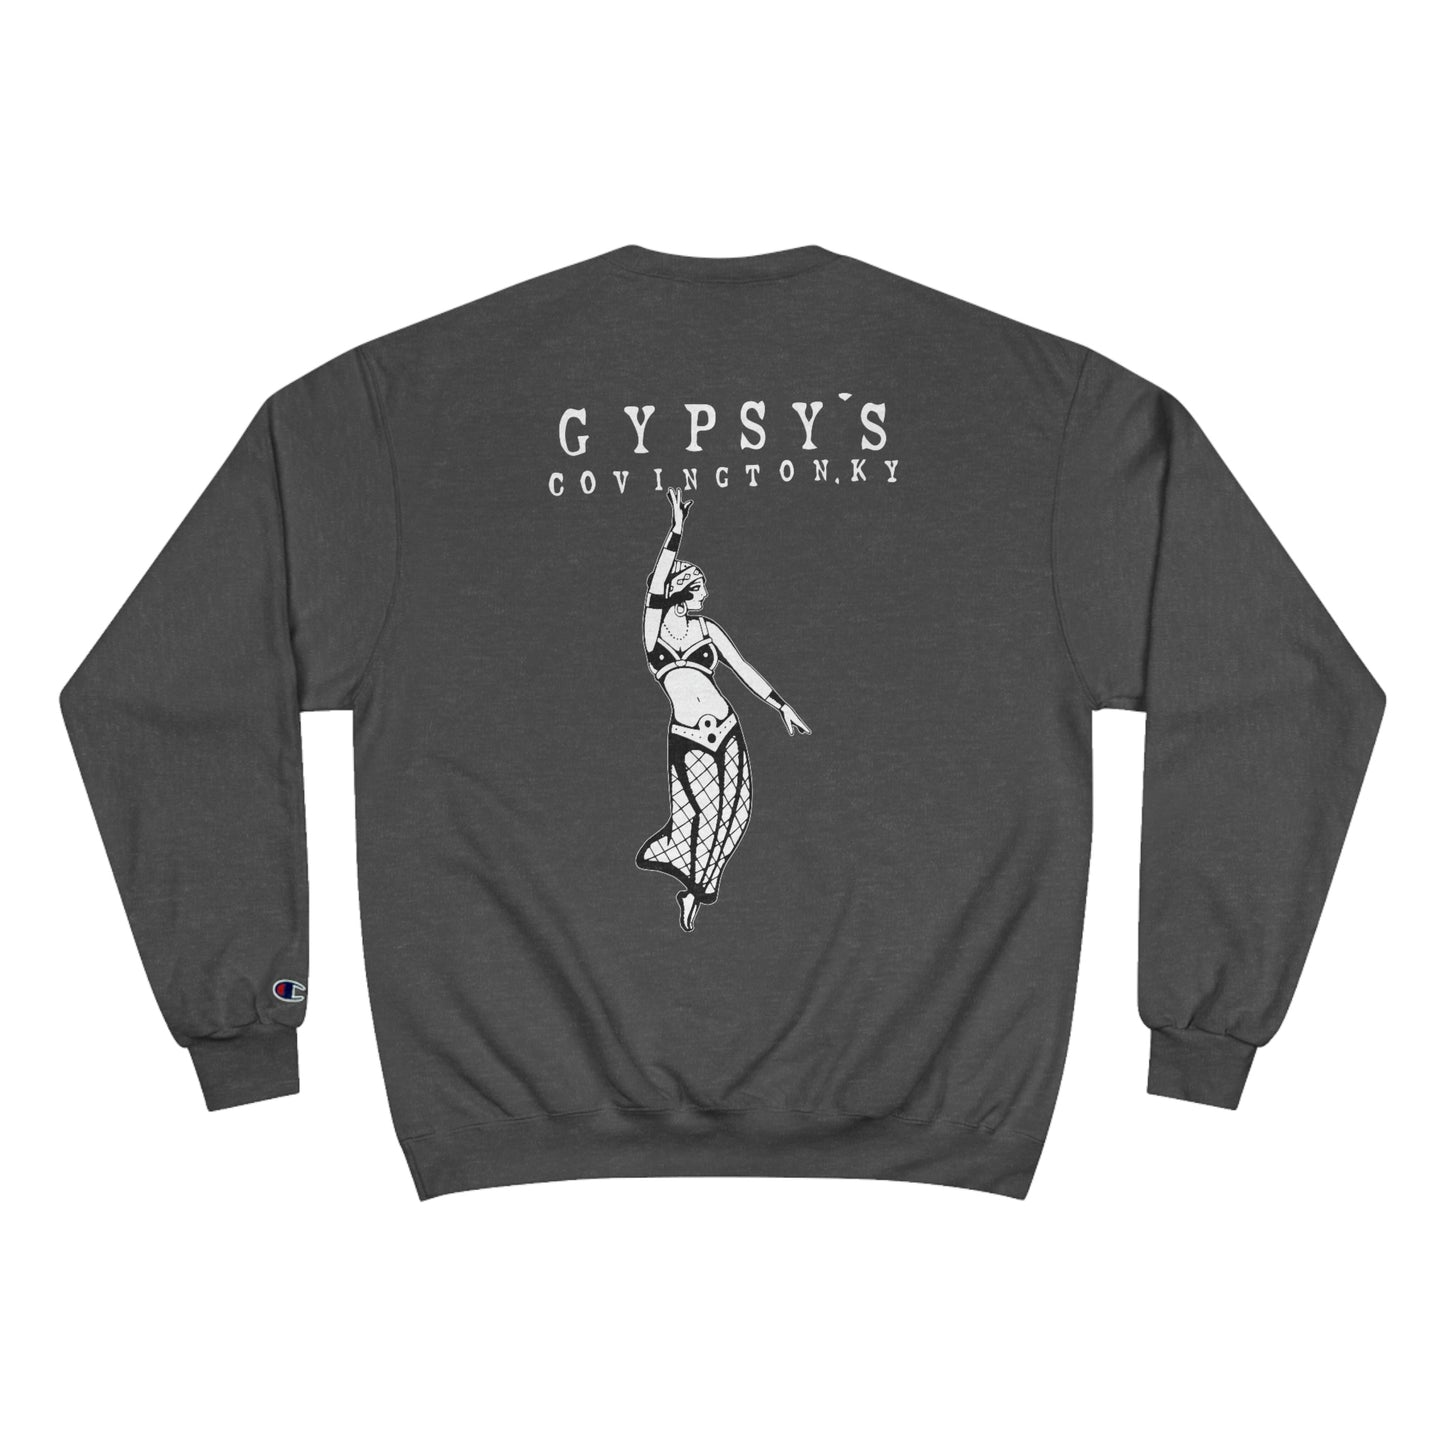 Unisex Champion Crewneck Sweatshirt | Gypsy's Dancing Gypsy Lady (by @tylerabnertattoo)